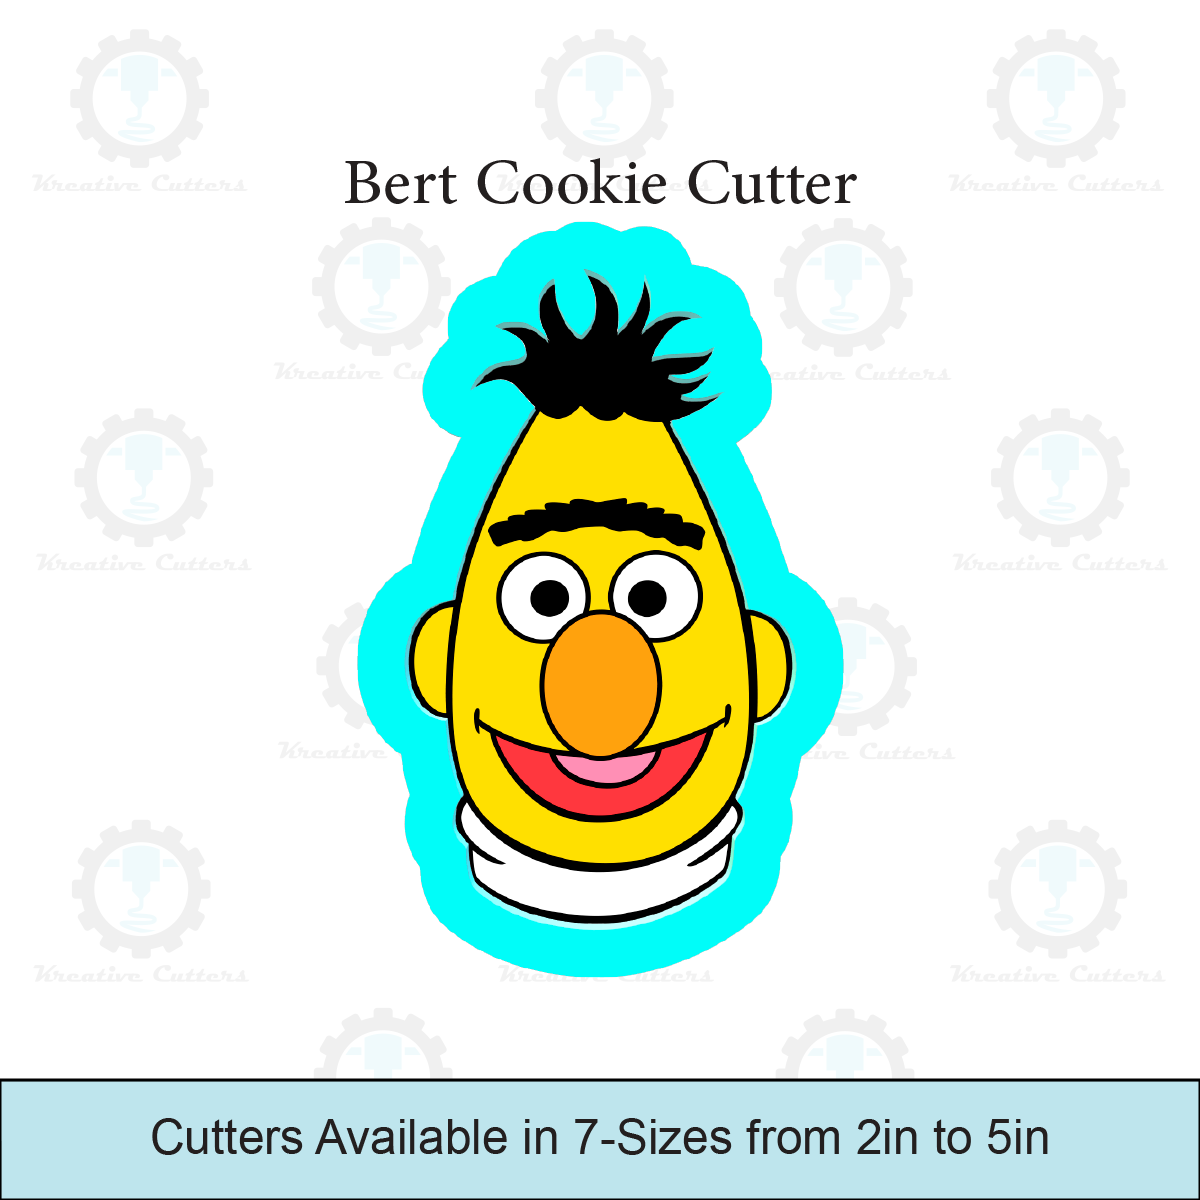 Bert Cookie Cutter